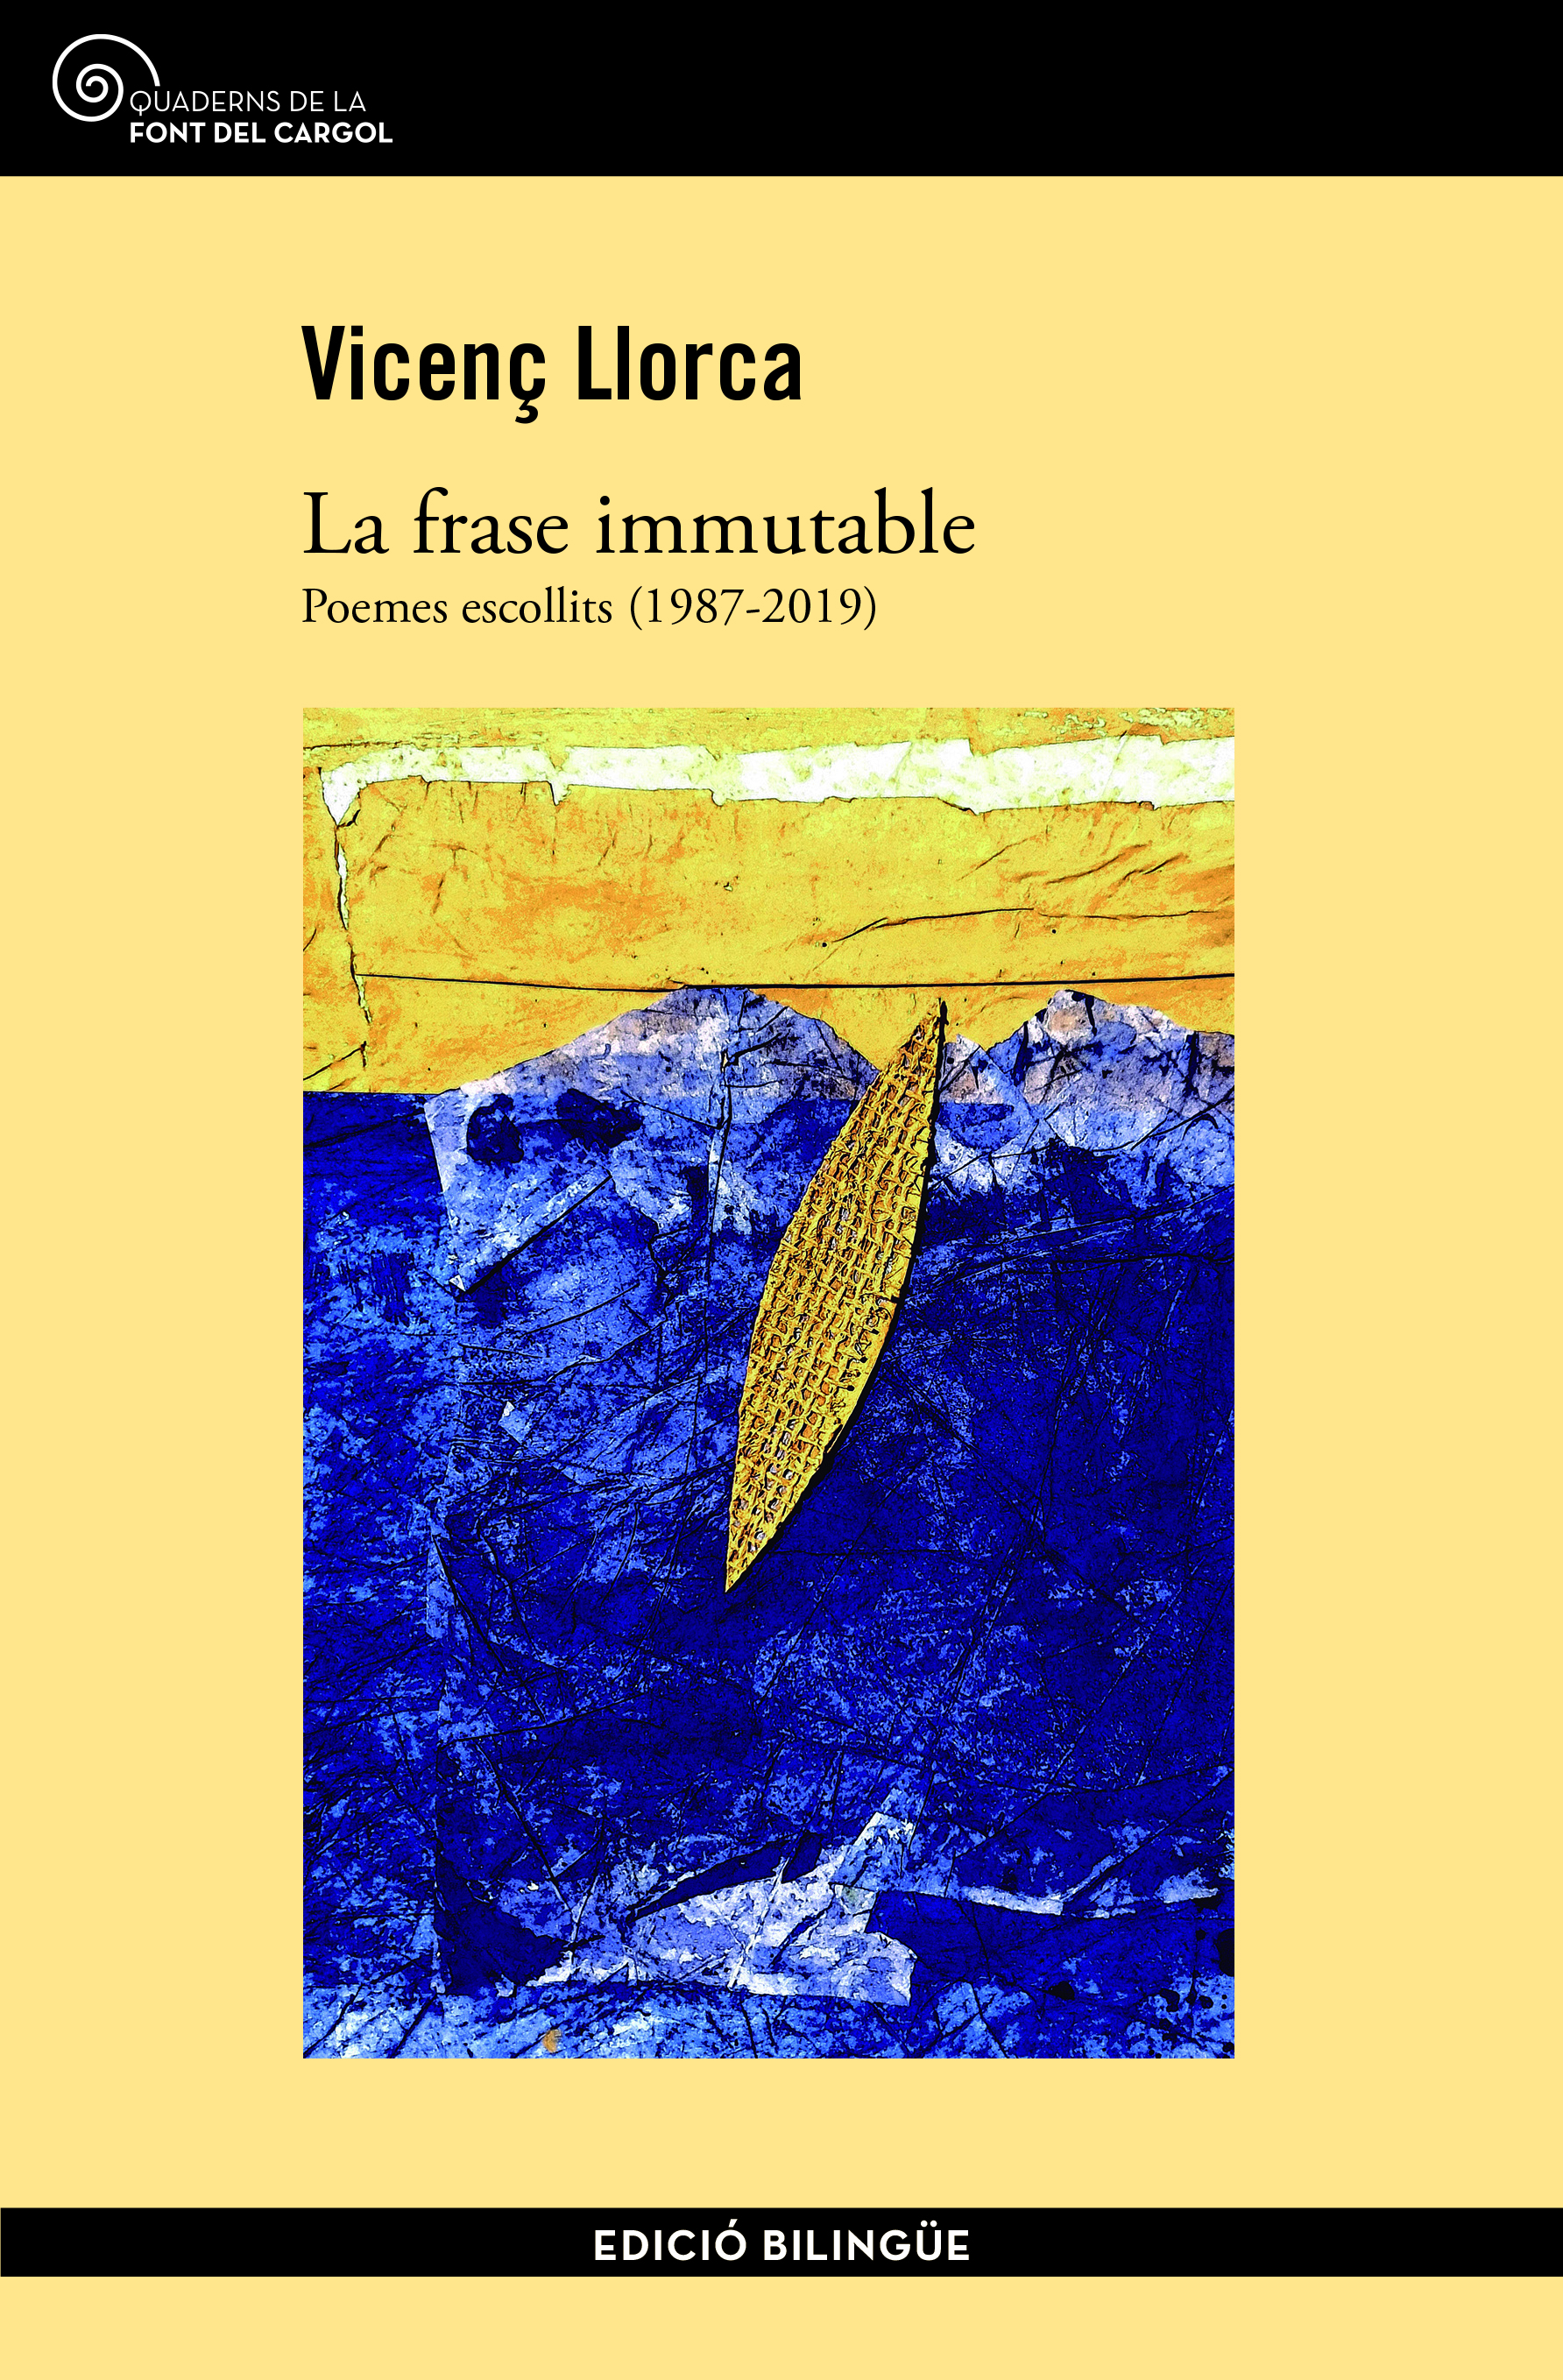 Presentació del llibre 'La frase immutable', de Vicenç Llorca